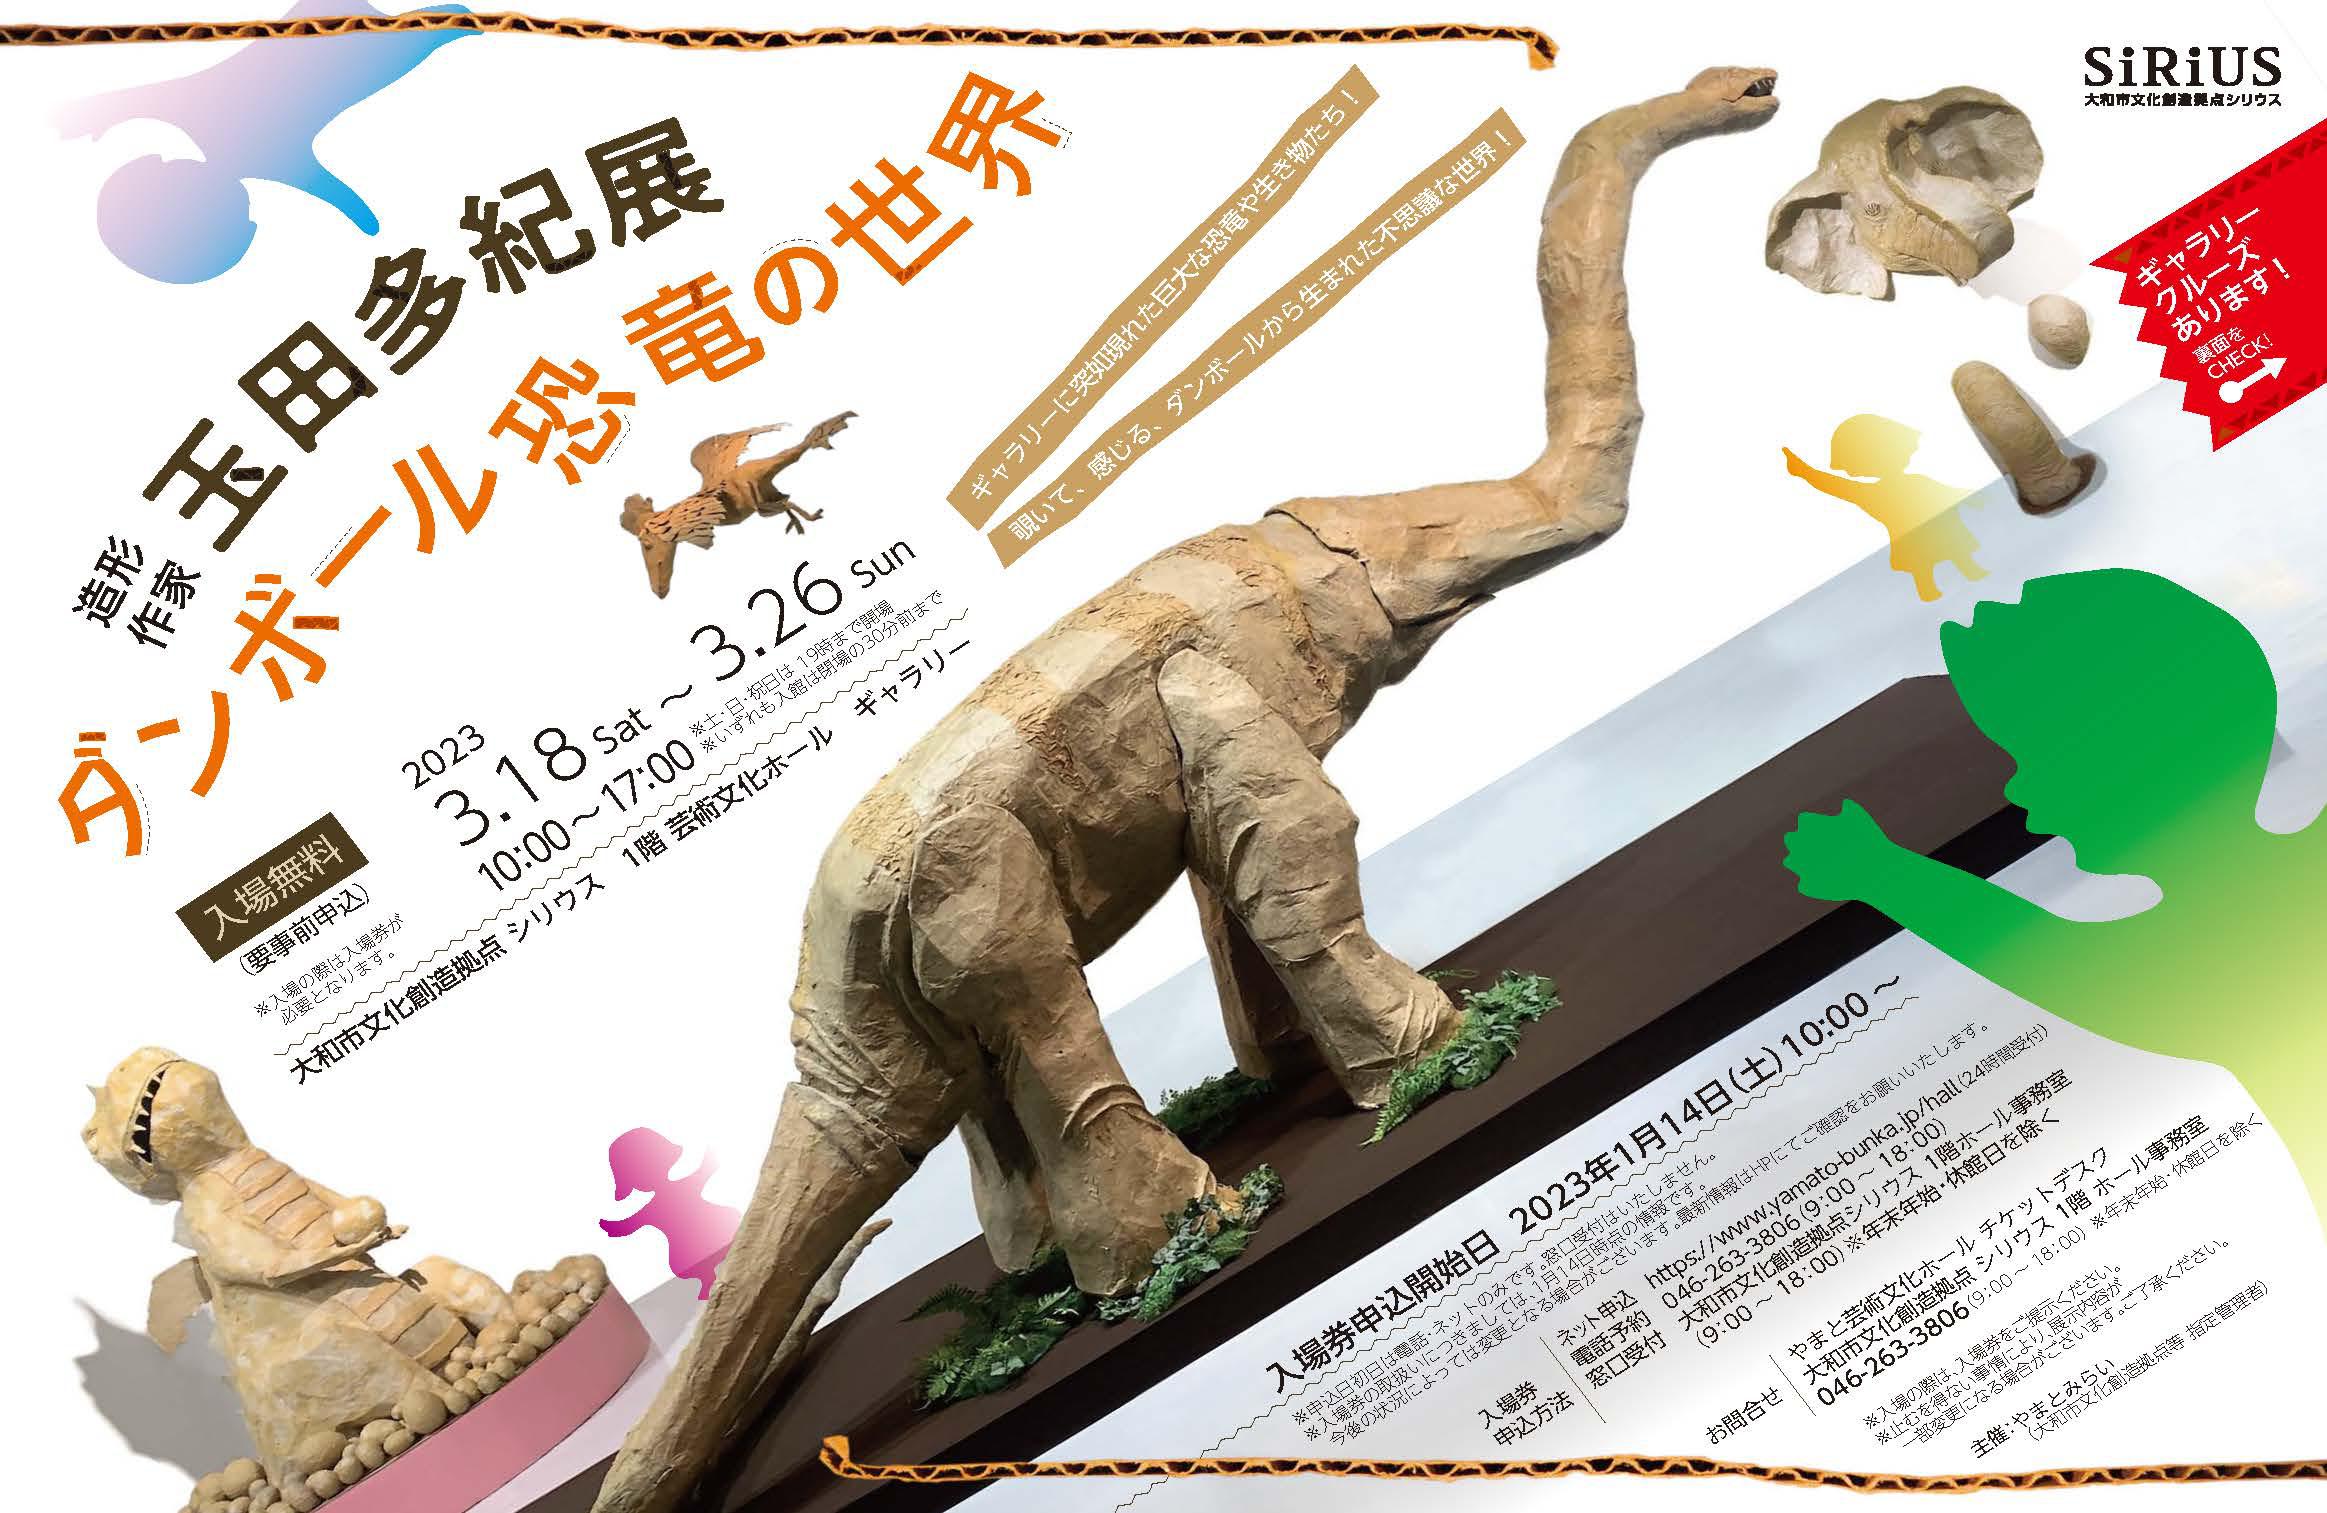 【予定枚数終了】造形作家 玉田多紀展 ダンボール恐竜の世界